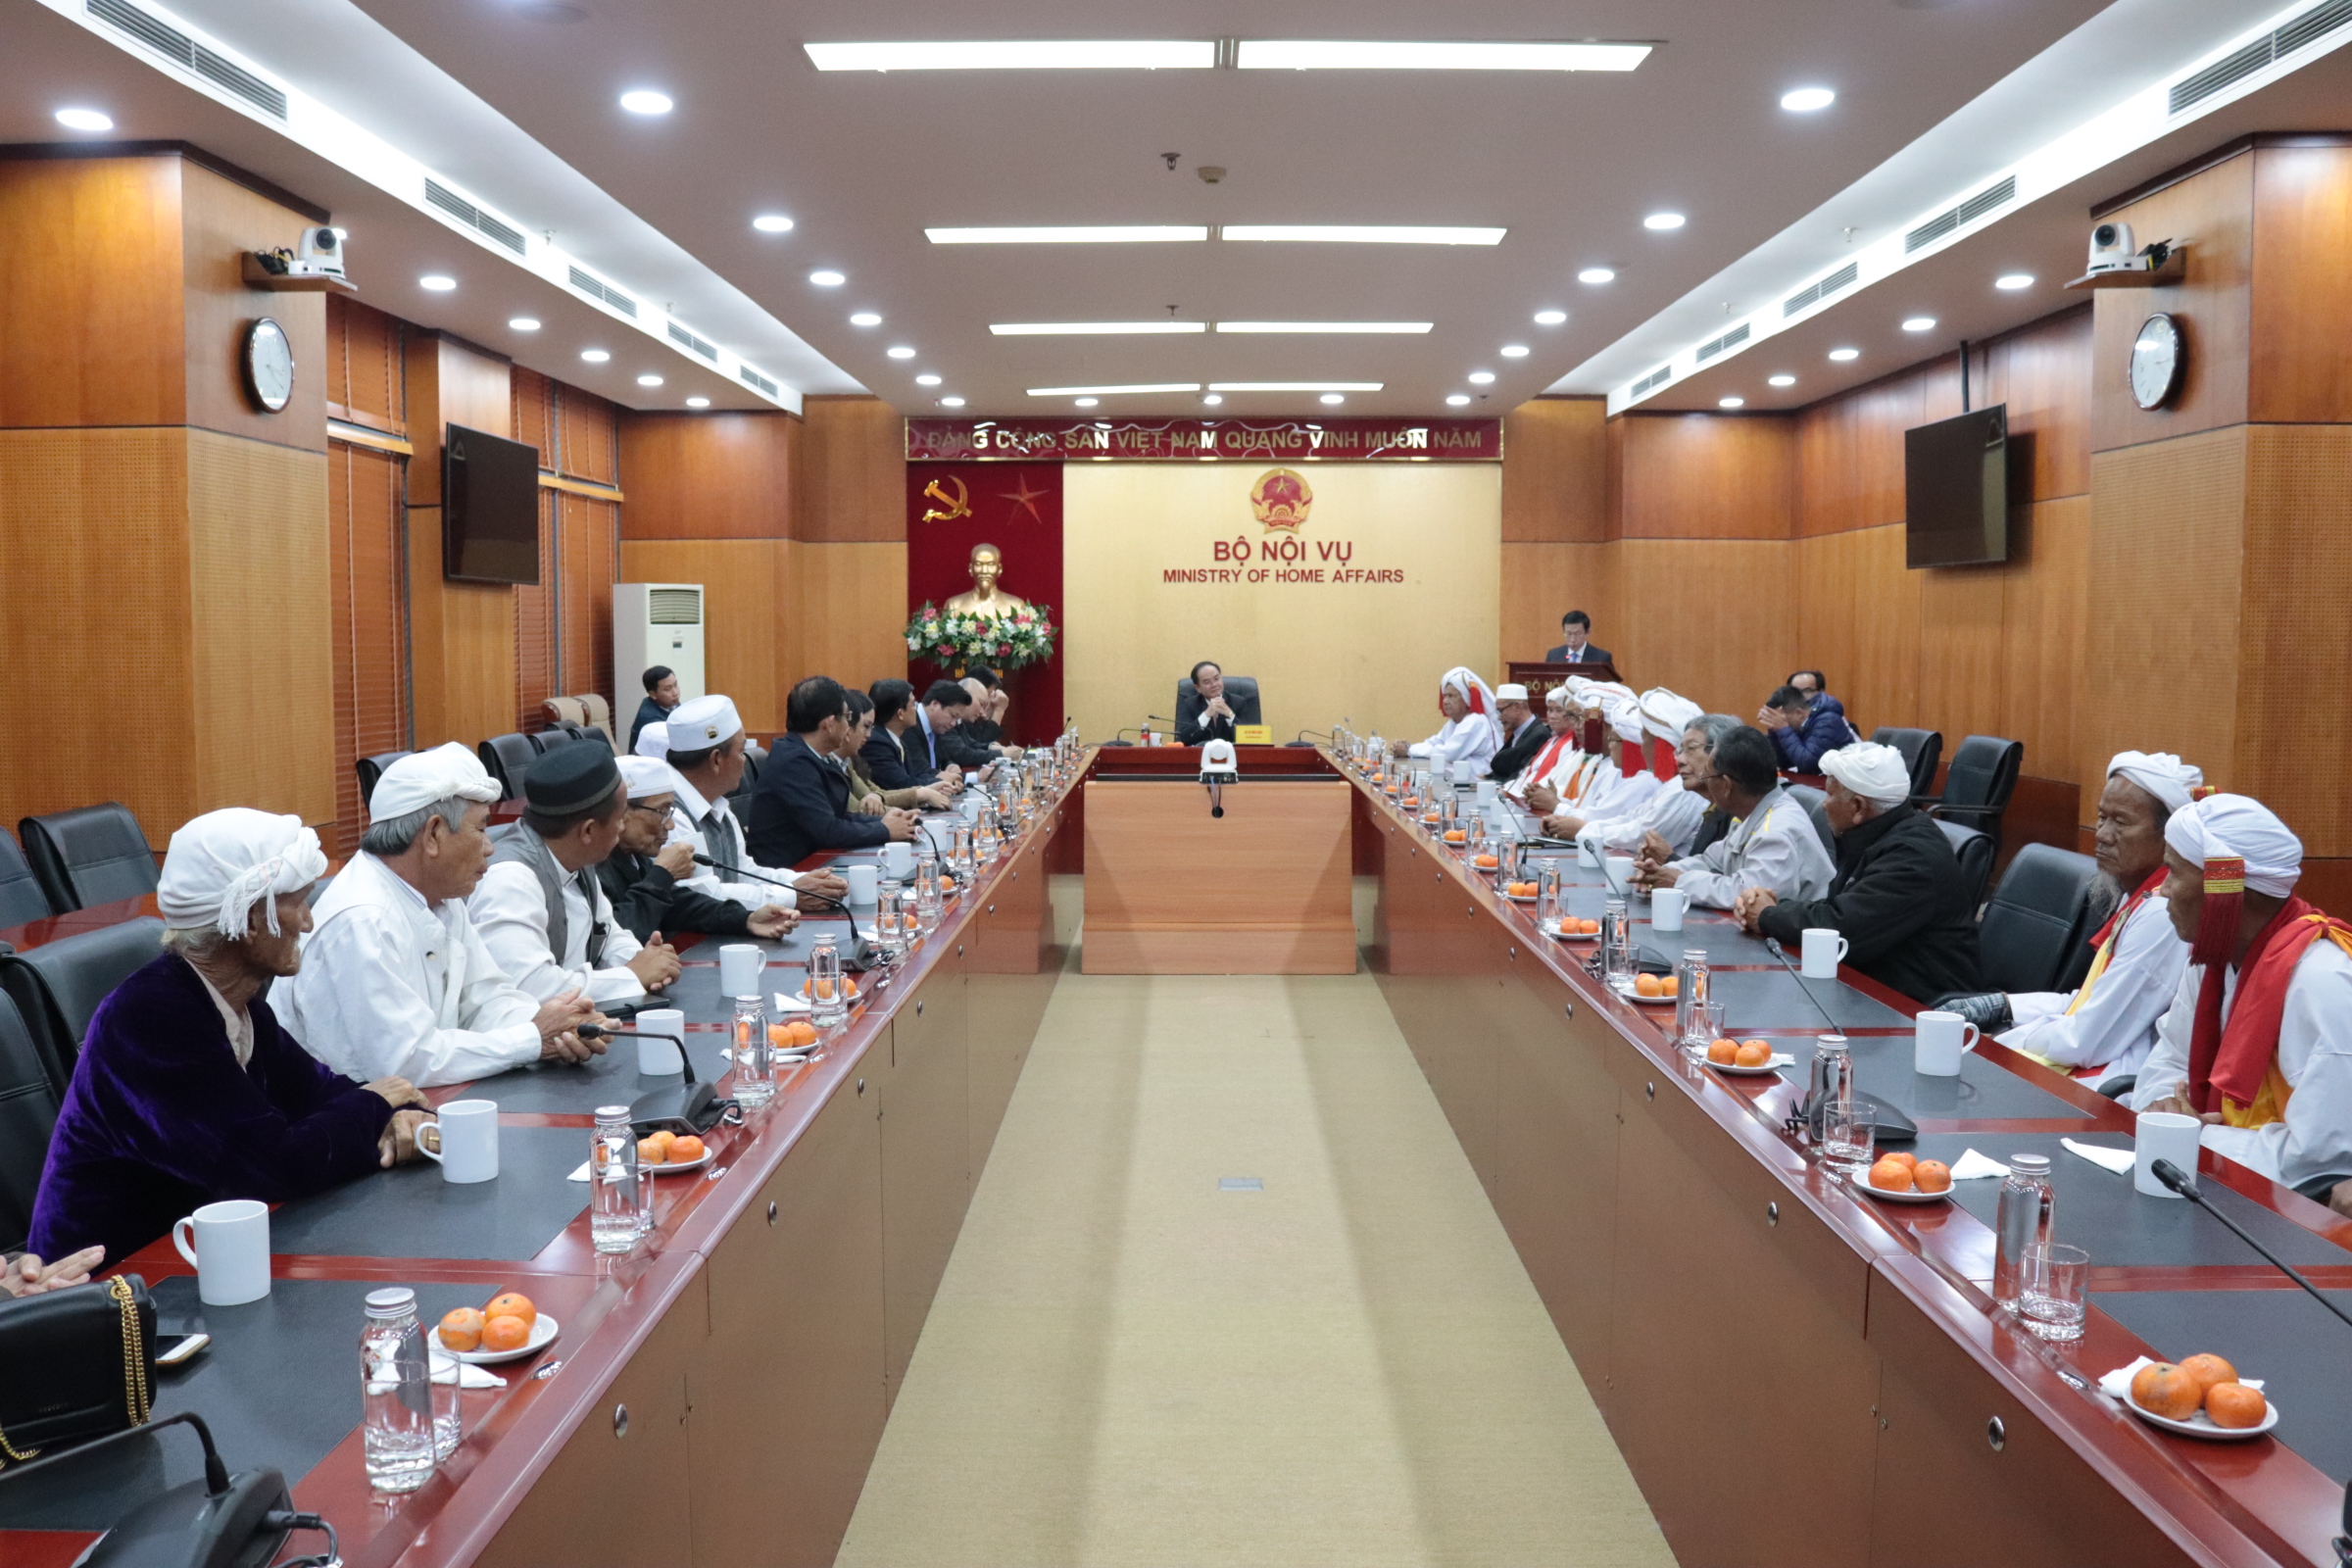 Thứ trưởng Bộ Nội vụ Vũ Chiến Thắng tiếp Đoàn đại biểu tôn giáo vùng đồng bào dân tộc Chăm, tỉnh Ninh Thuận